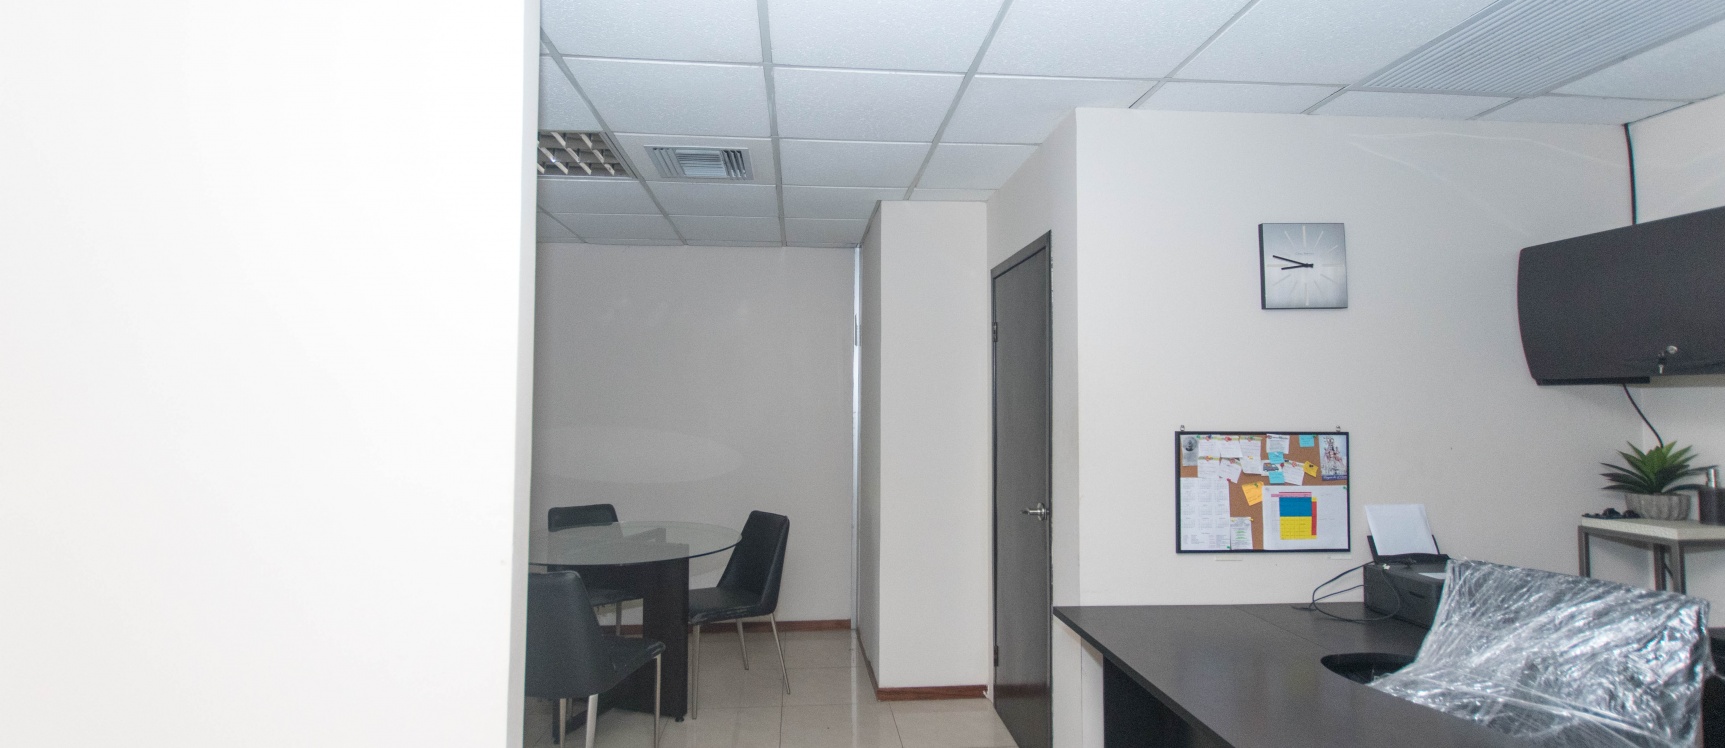 GeoBienes - Oficina en alquiler ubicada en Edificio Trade Building - Plusvalia Guayaquil Casas de venta y alquiler Inmobiliaria Ecuador